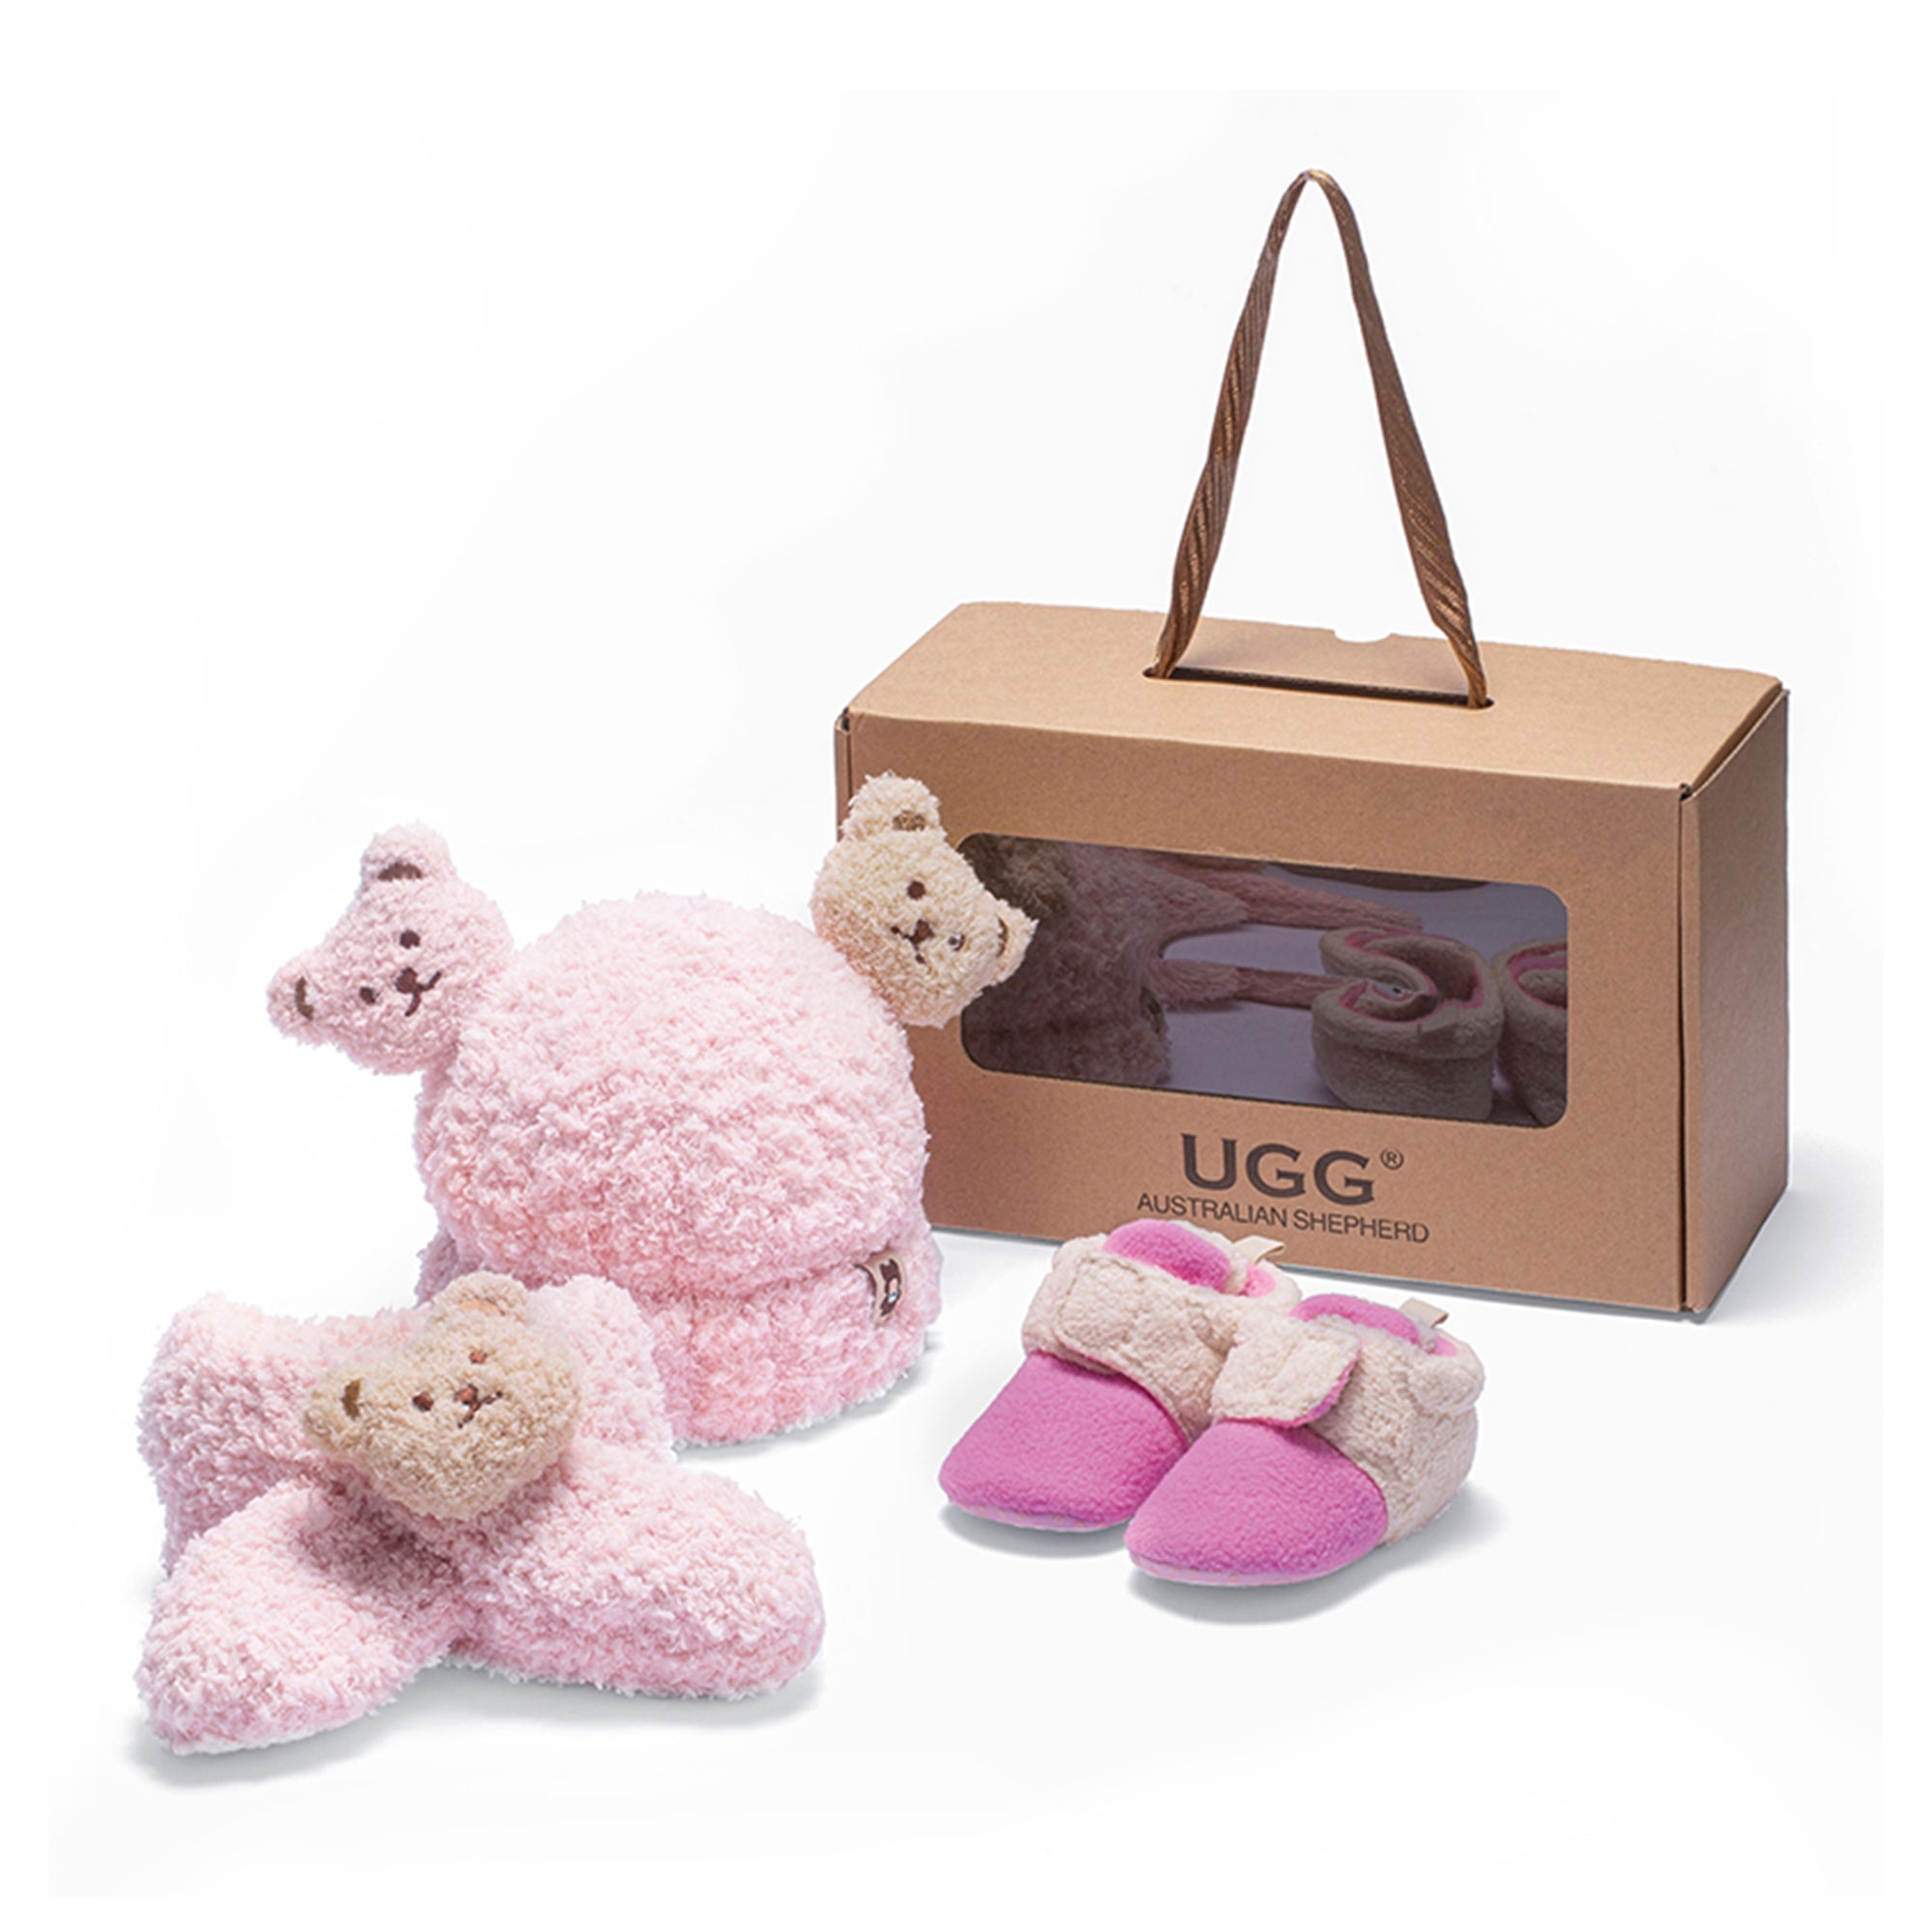 UGG Baby Booties Gift Set